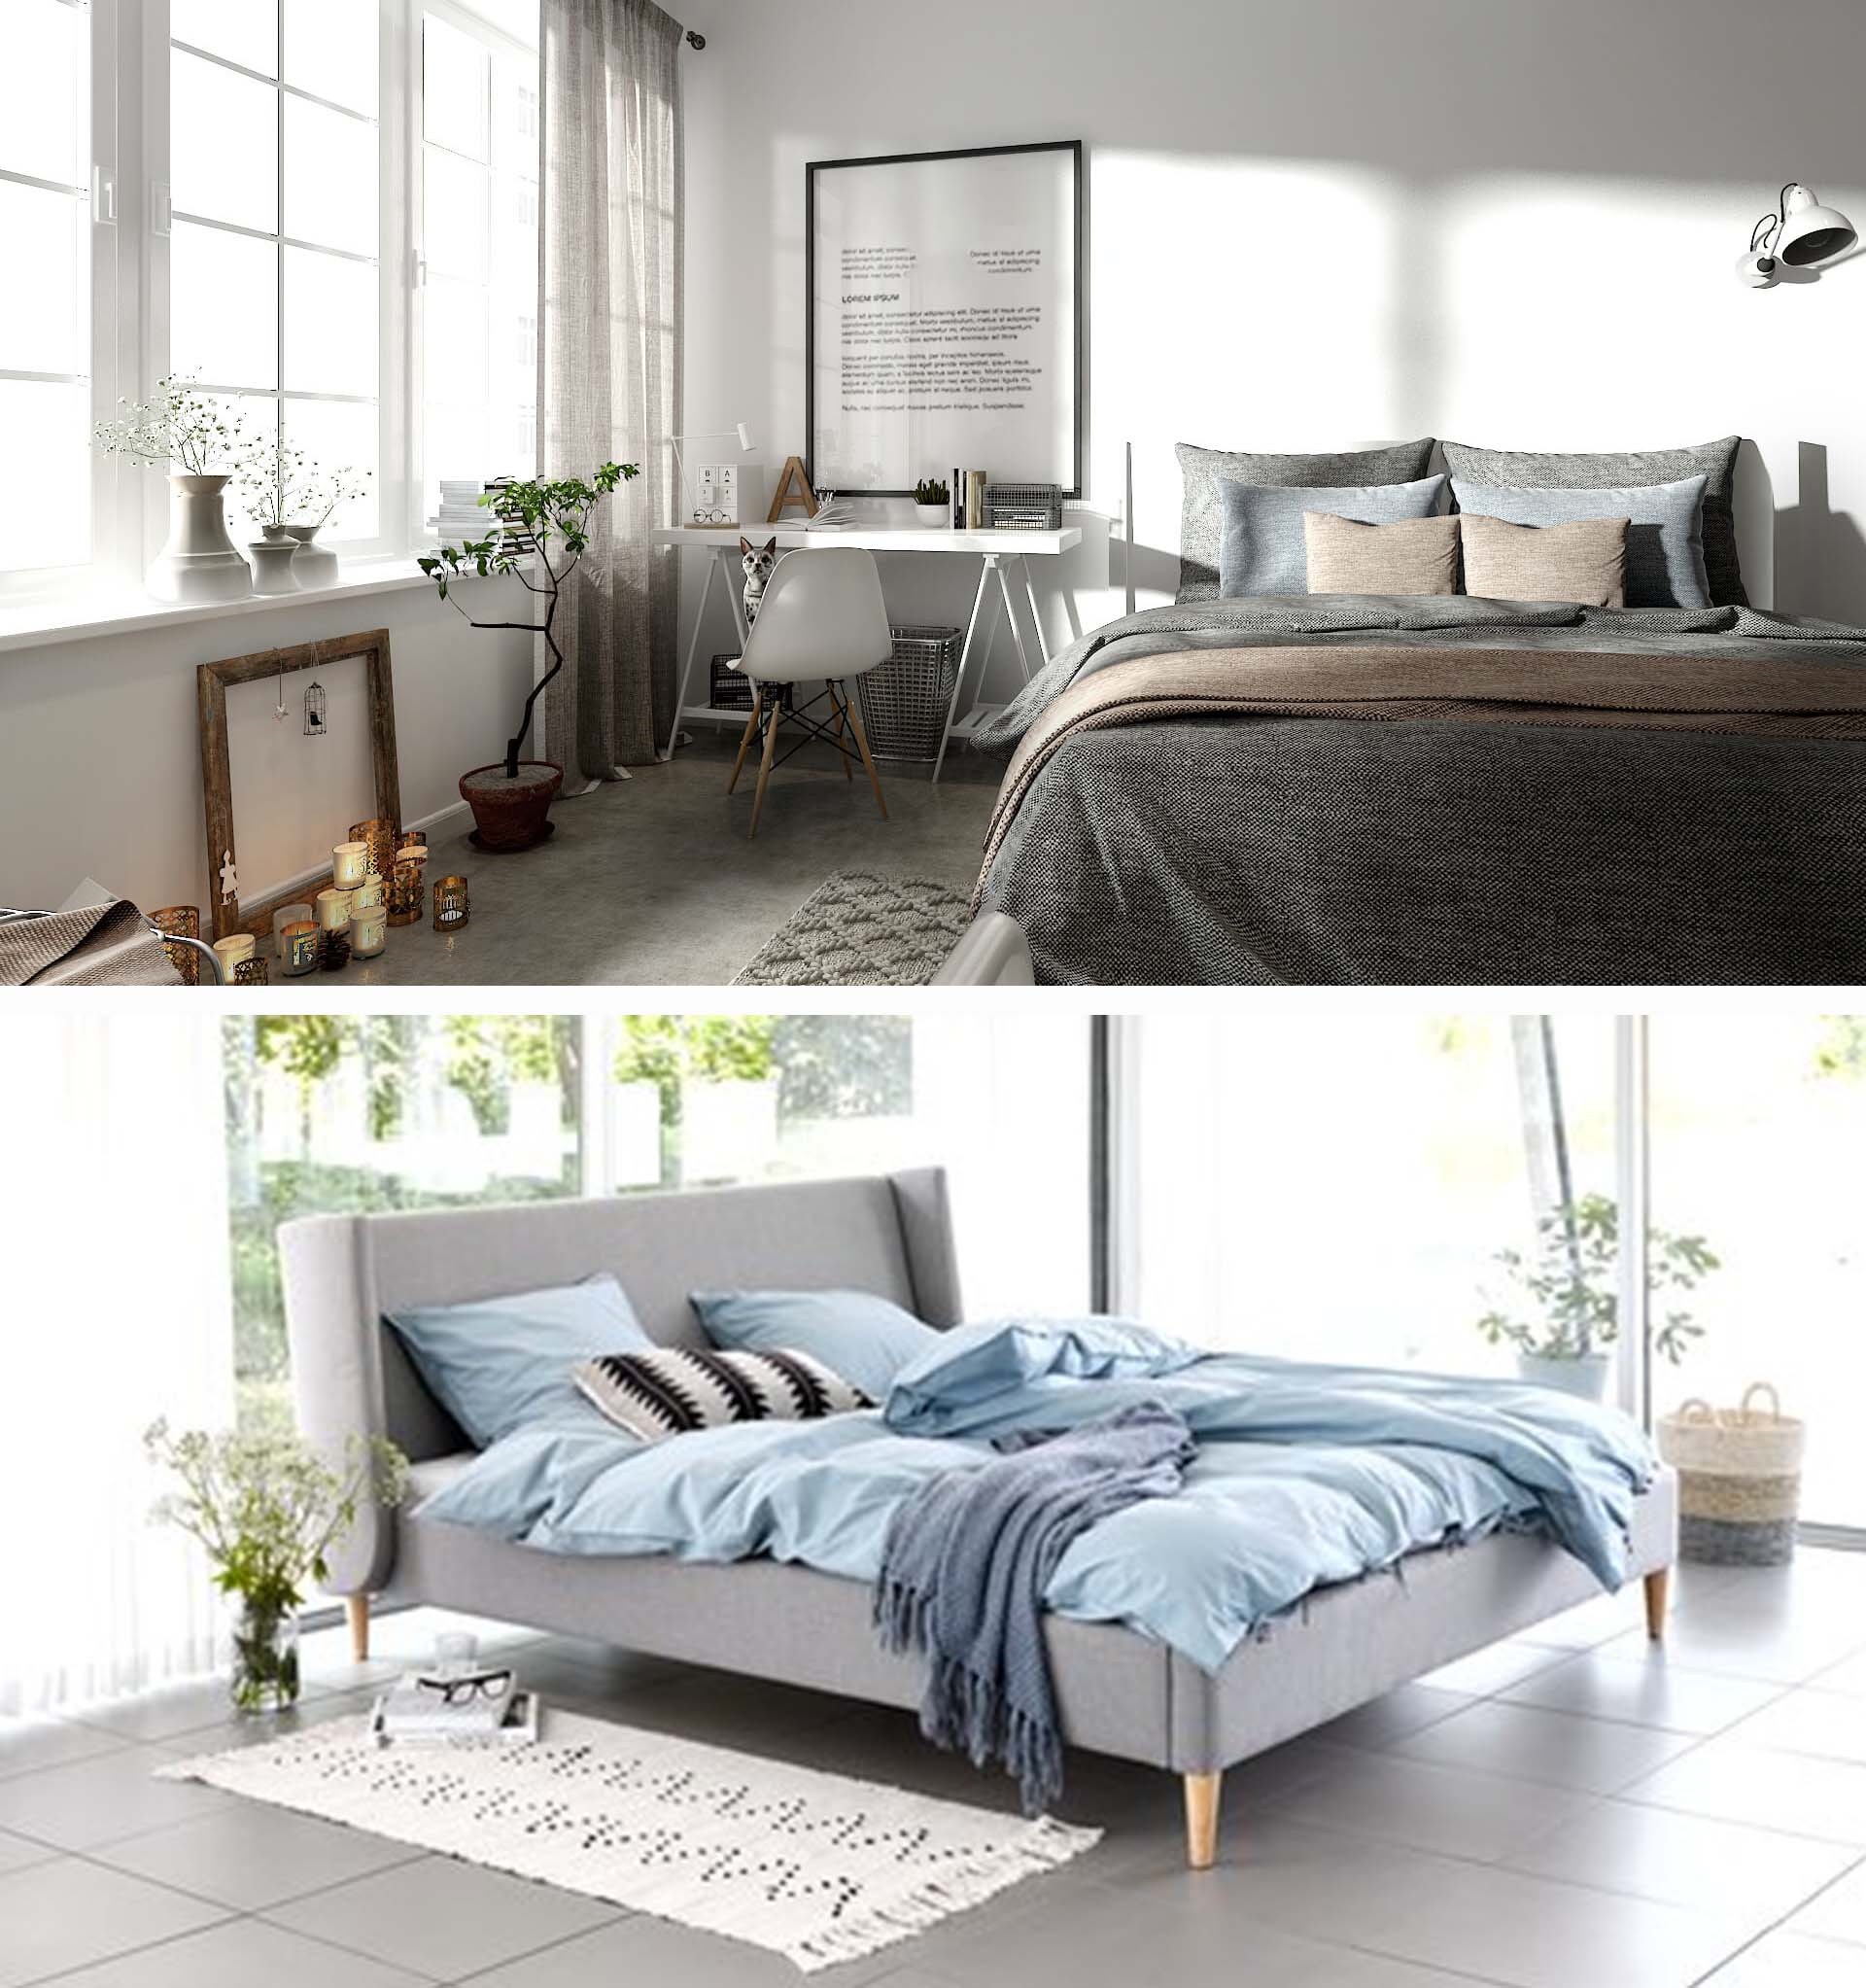 Phong cách Bắc Âu: Giường ngủ sang trọng với tông xám đi kèm đồ nội thất đơn giản, tinh tế. Tông sáng kèm với vài đồ gỗ tự nhiên đem lại sự sang trọng cho căn phòng.